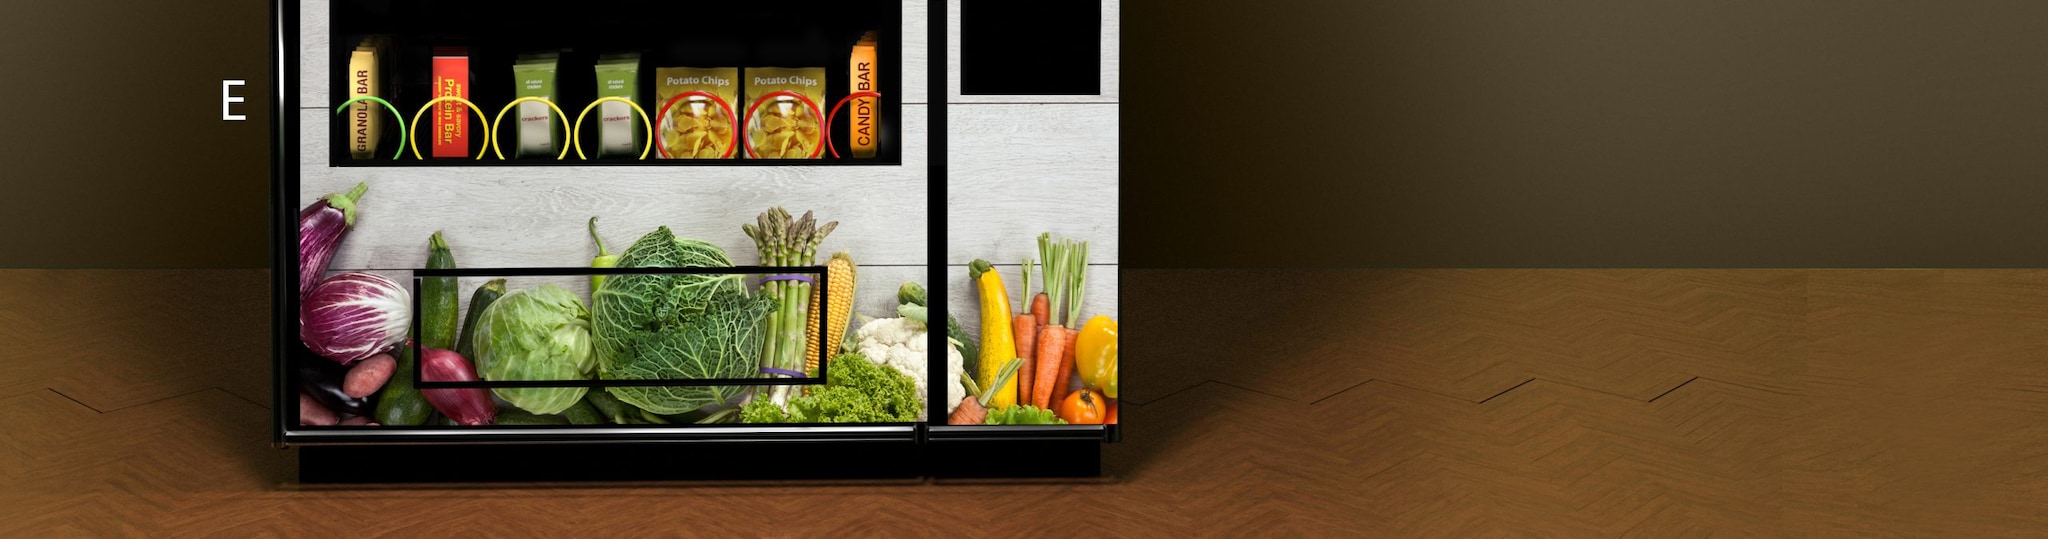 Row E - Food vending machine